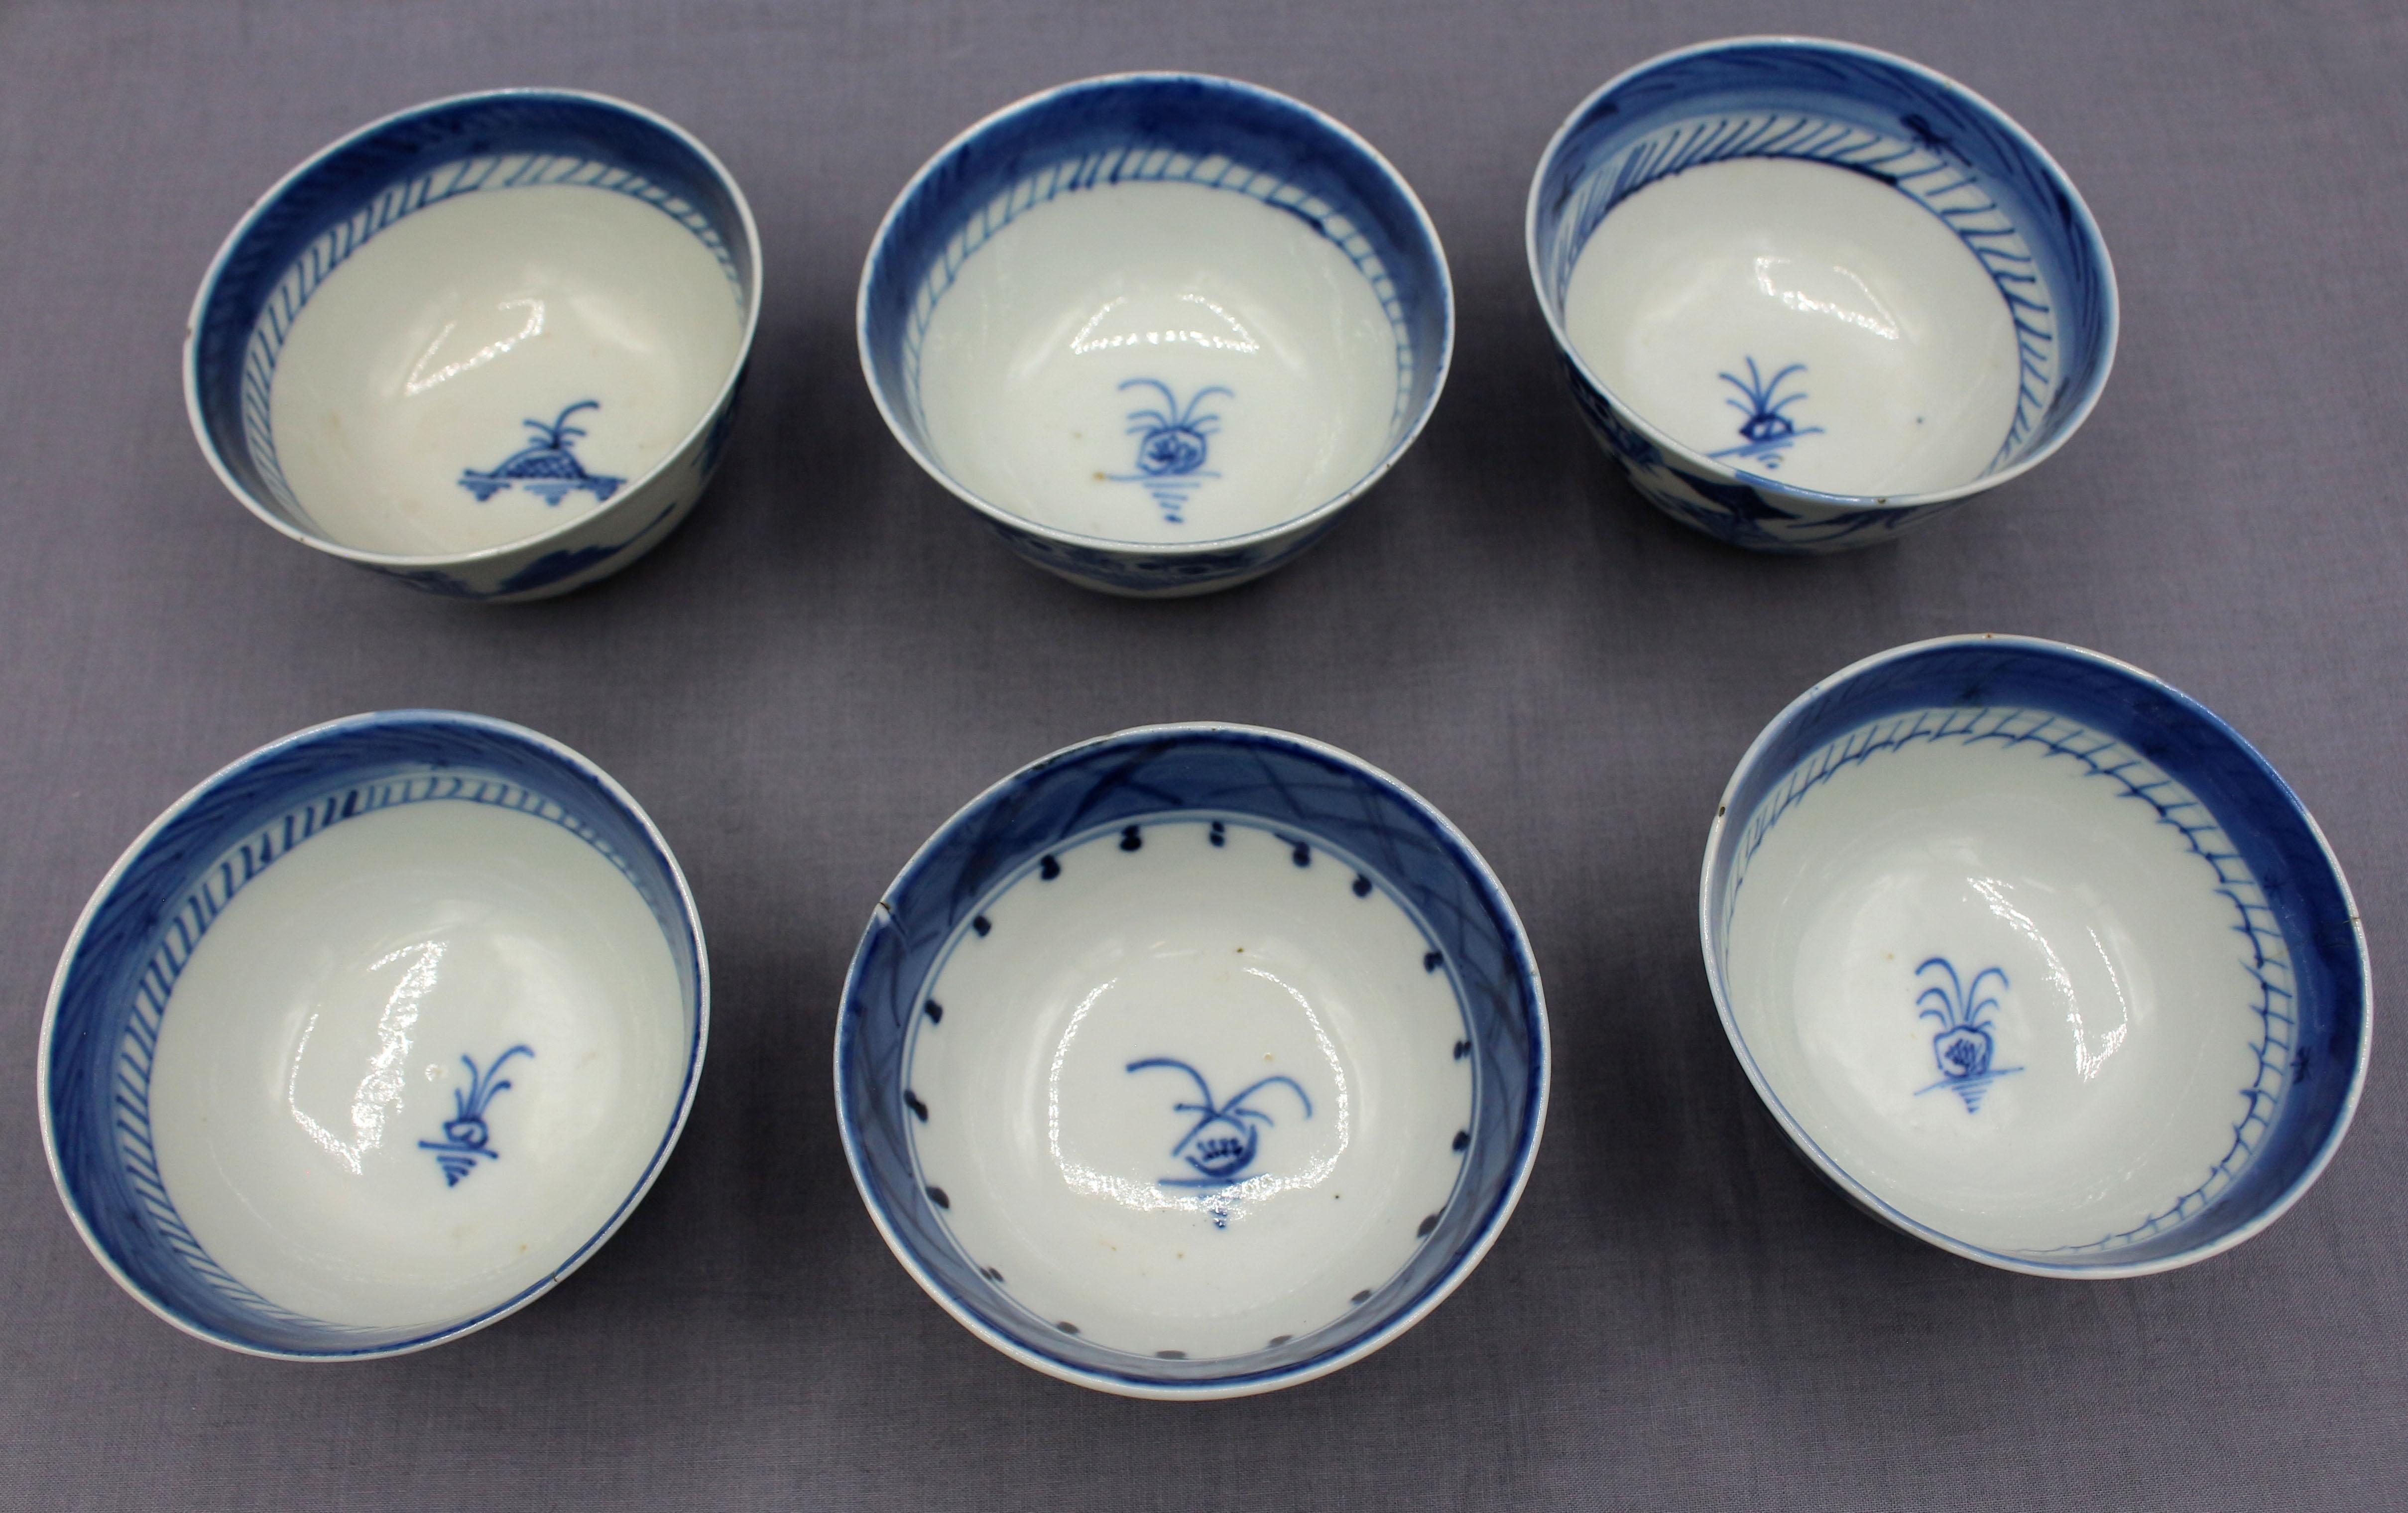 Ensemble de 6 petits bols à riz ou à soupe de Canton bleu assemblés au 19e siècle, exportation chinoise. Porcelaine. 3 lignes de cheveux ; petits éclats et défauts de cuisson.
3 3/4